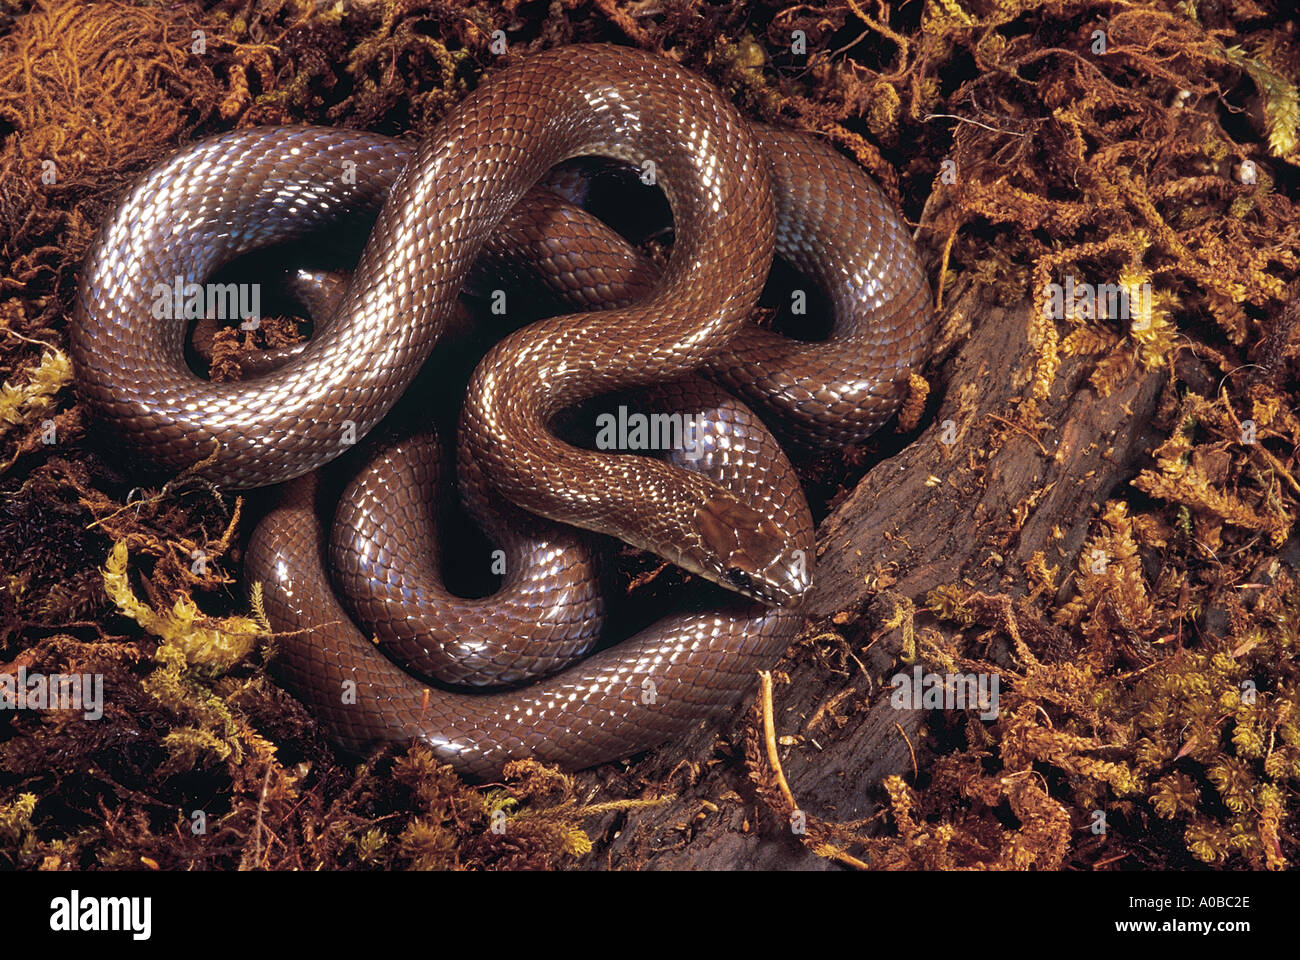 Indian couleuvre lisse coronella brachyura .. petit non rare venimeux serpent mince qui habituellement ne pousse à 70 cm de longueur. Banque D'Images